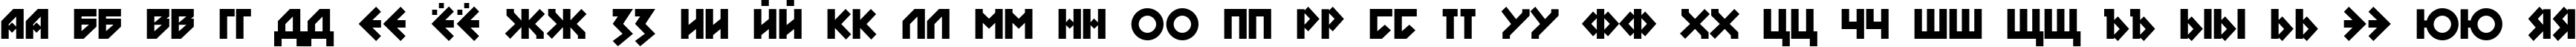 Пример написания русского алфавита шрифтом DS Nova Black